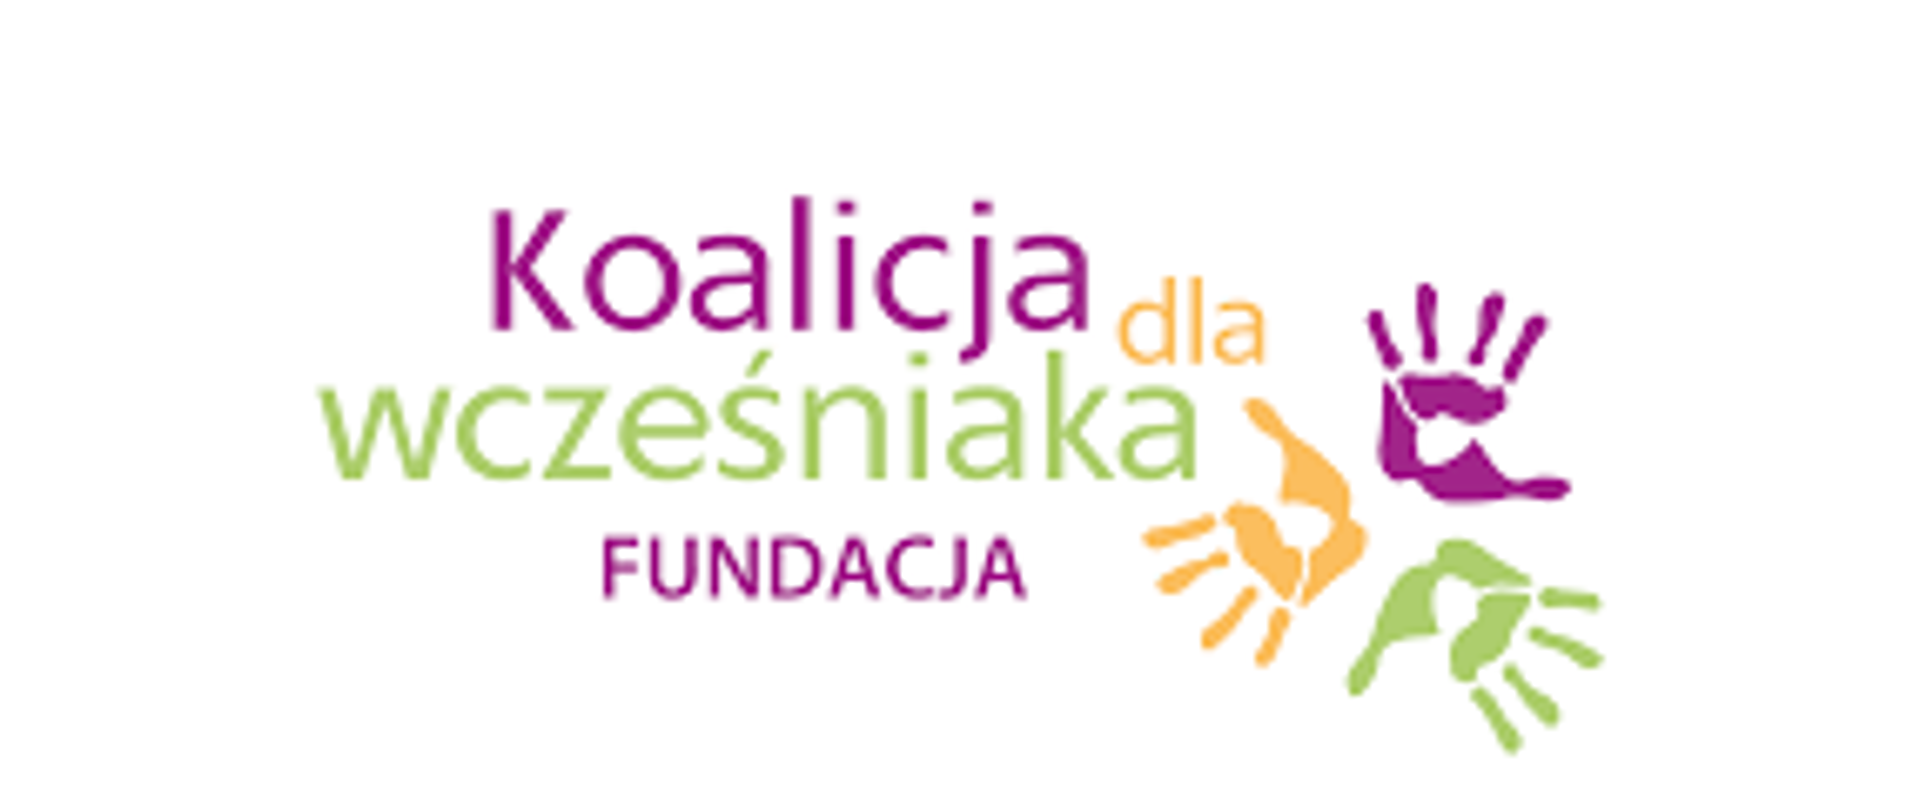 Logo - Koalicja dla wcześniaka